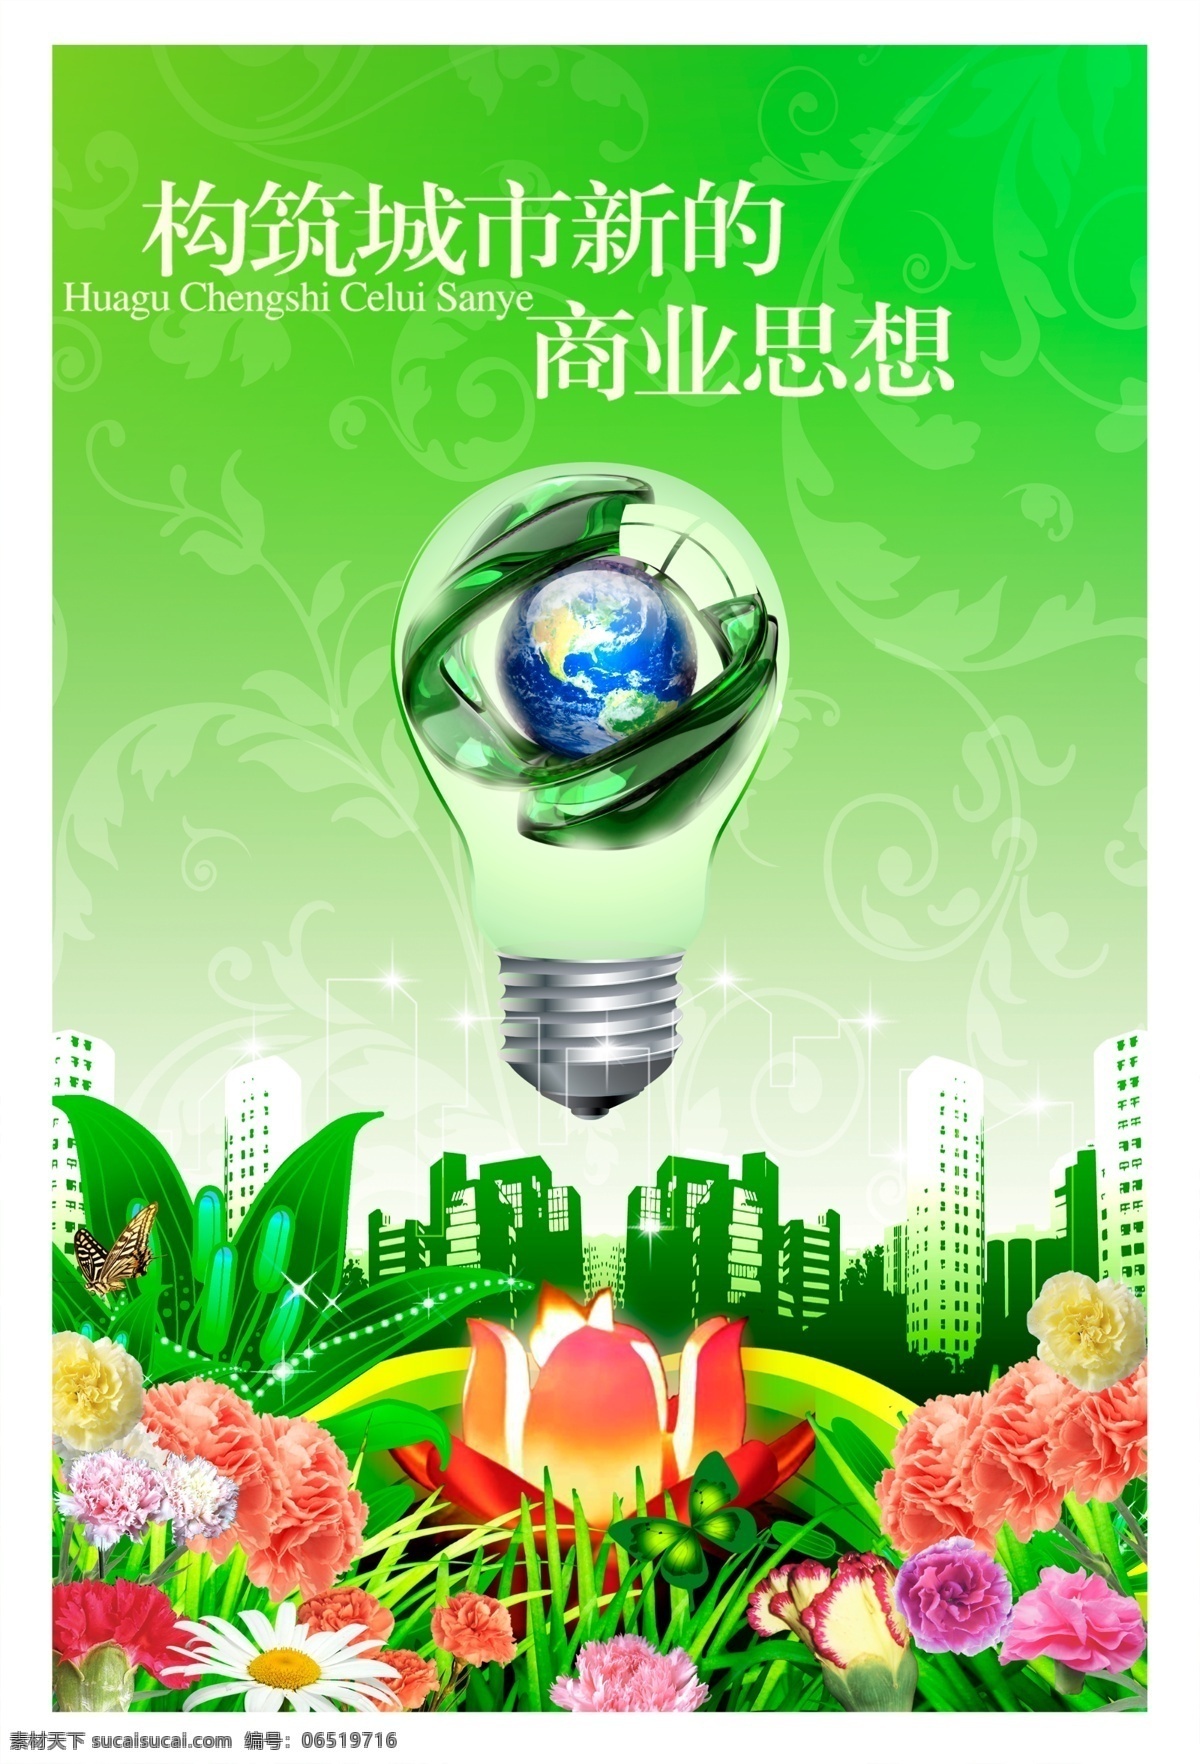 创意 节能 灯泡 海报 环保 绿色 健康 绿色能源 城市建设 创意地球 公益海报 企业文化 企业理念 社区建设 花朵 花草 广告设计模板 源文件